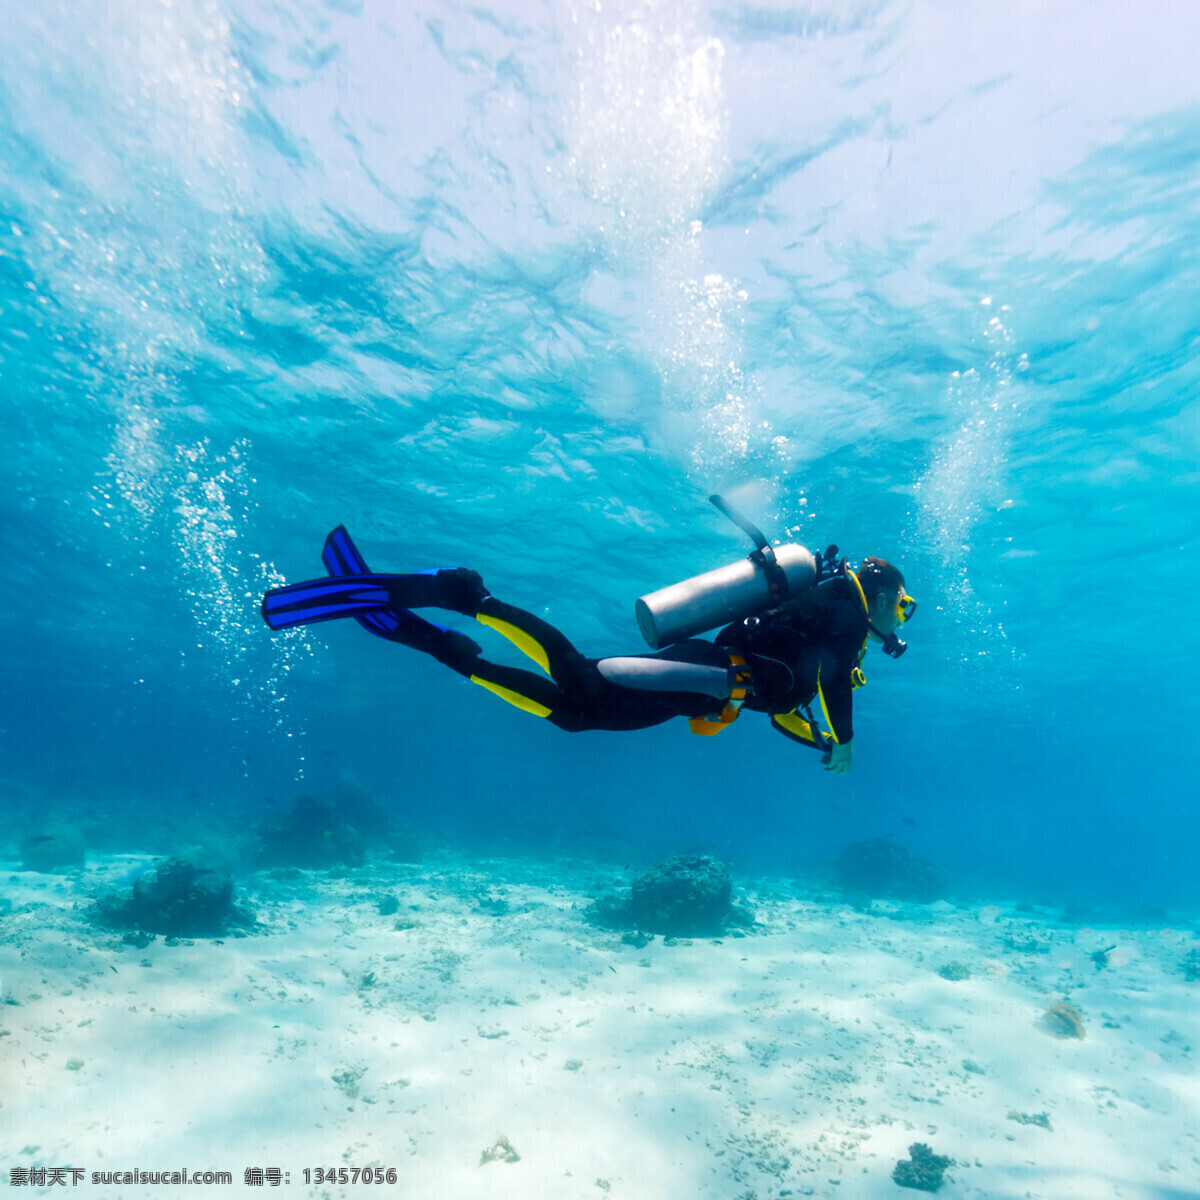 潜水运动 潜水员潜水 潜水员 潜水镜 海底世界 海洋 海洋世界 大海 海底 深海 潜水 人物图库 职业人物